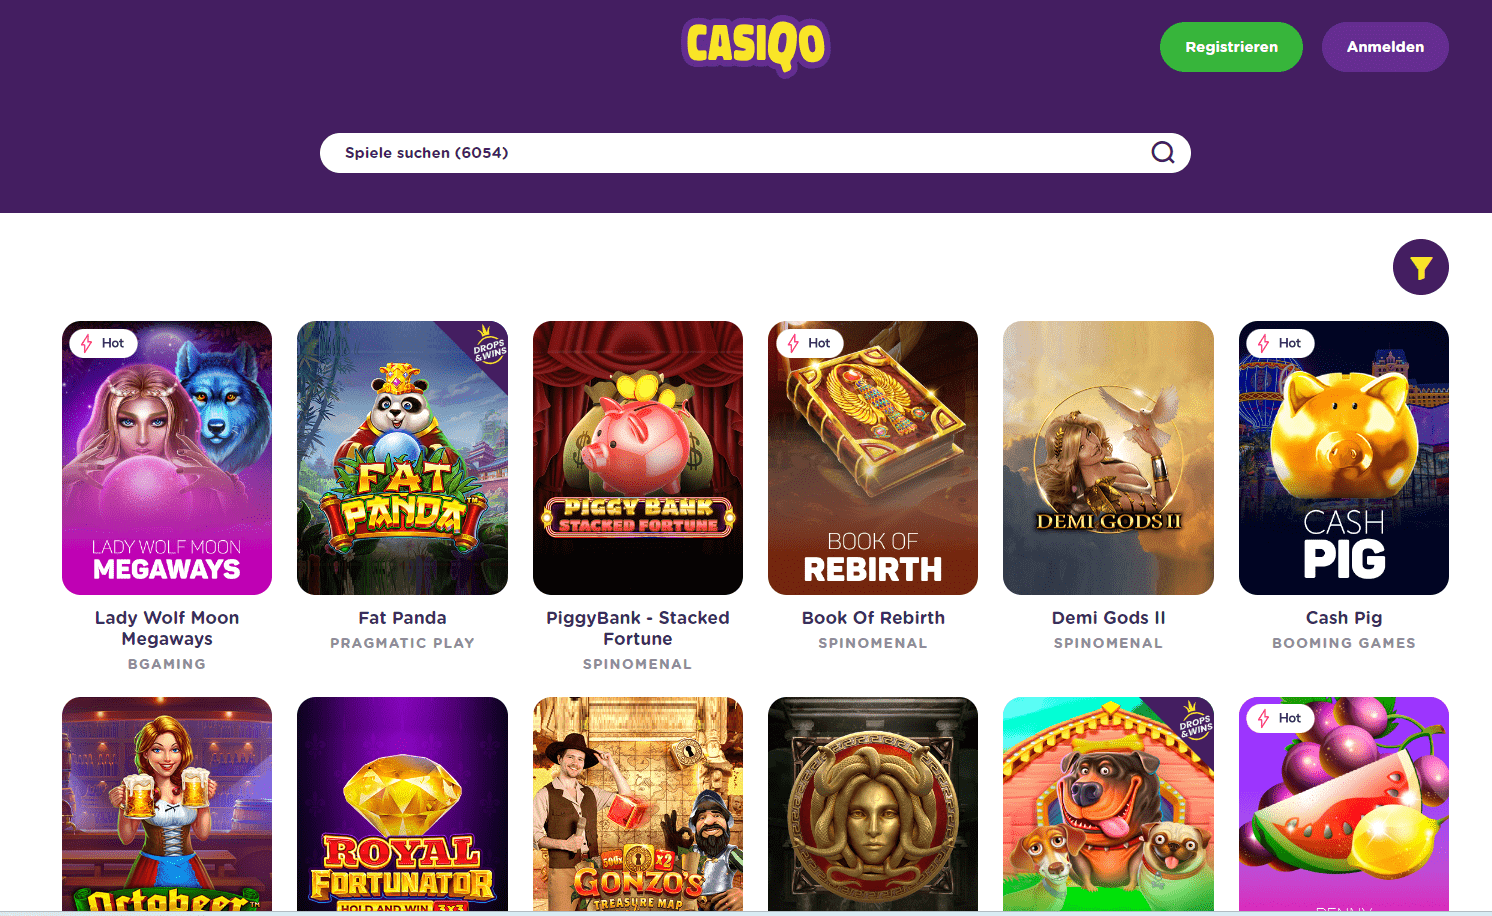 Casiqo Casino Games